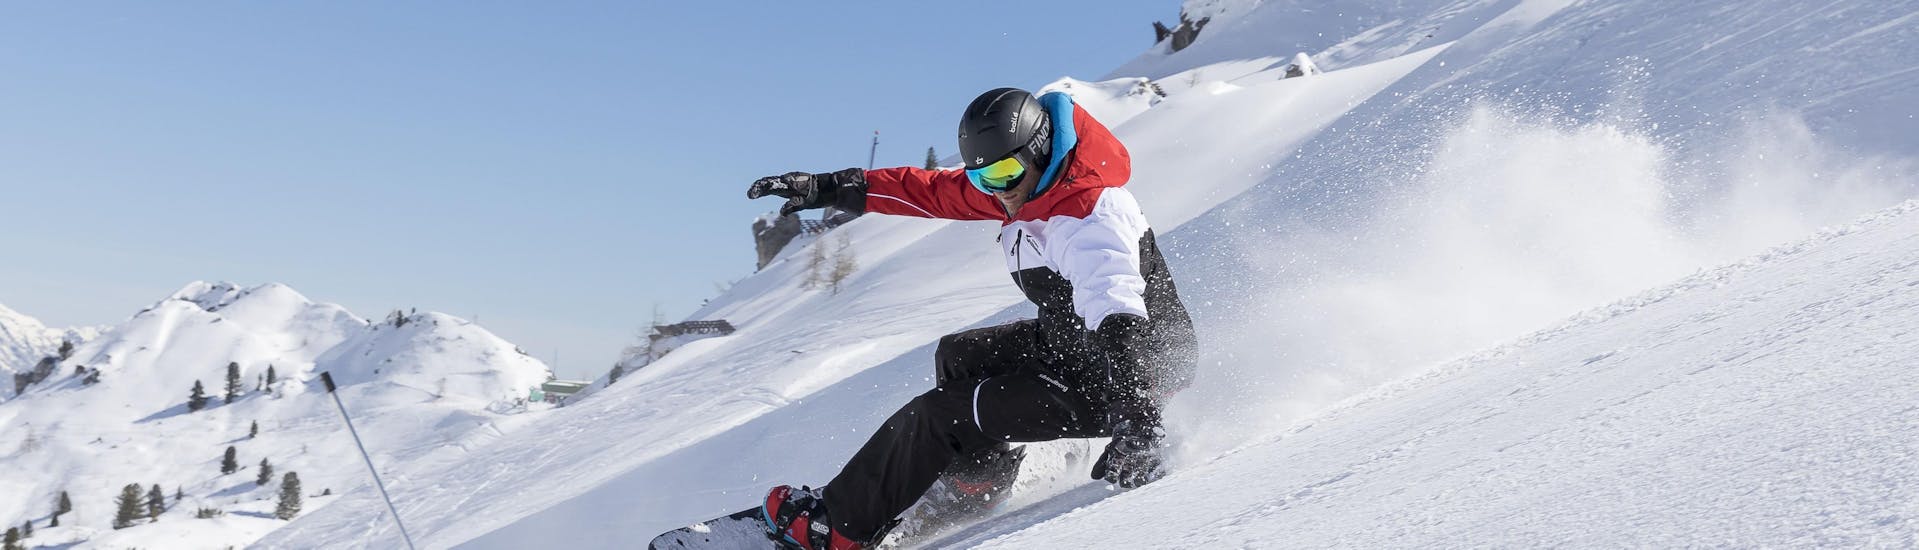 Uno snowboarder sfreccia su una pista durante le lezioni di snowboard per avanzati a Stubai.